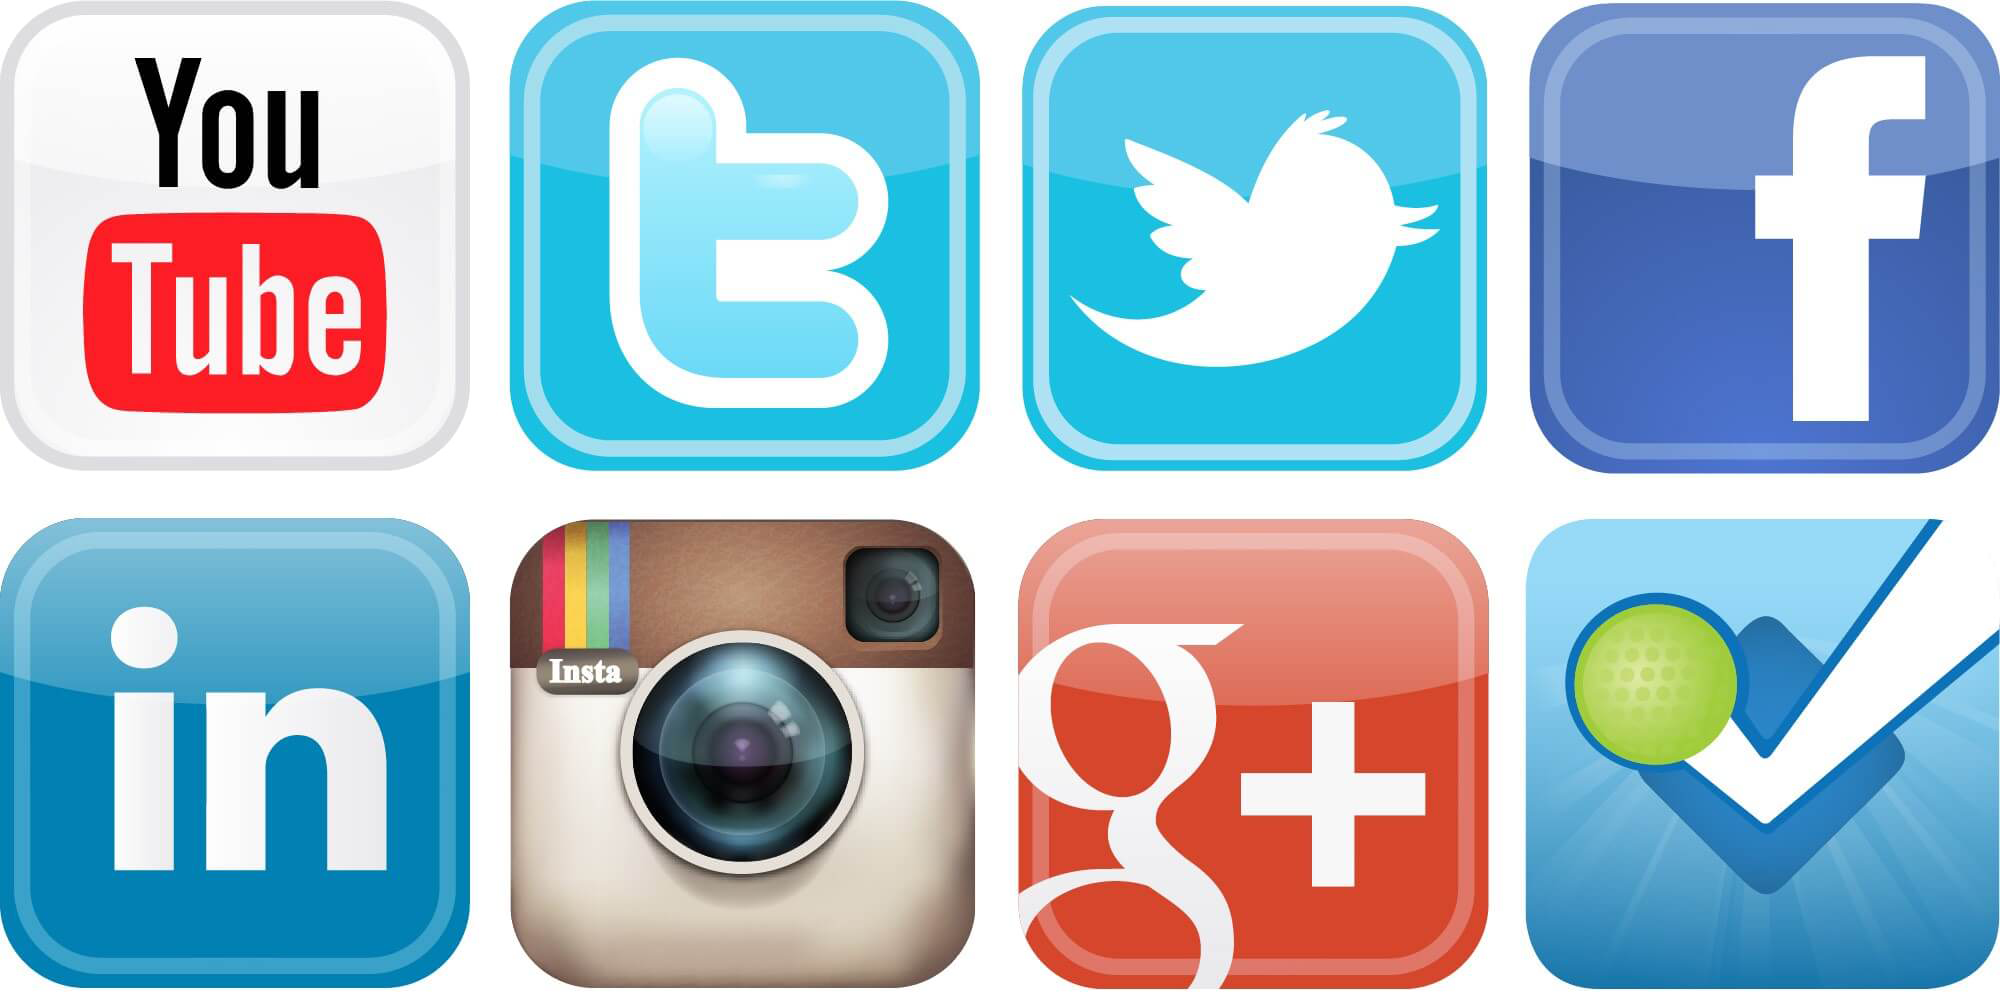 Логотипы соц сетей. Значки соцсетей. Иконки соц сетей. Соцсети эмблемы. Значки социальных сетей на прозрачном фоне.